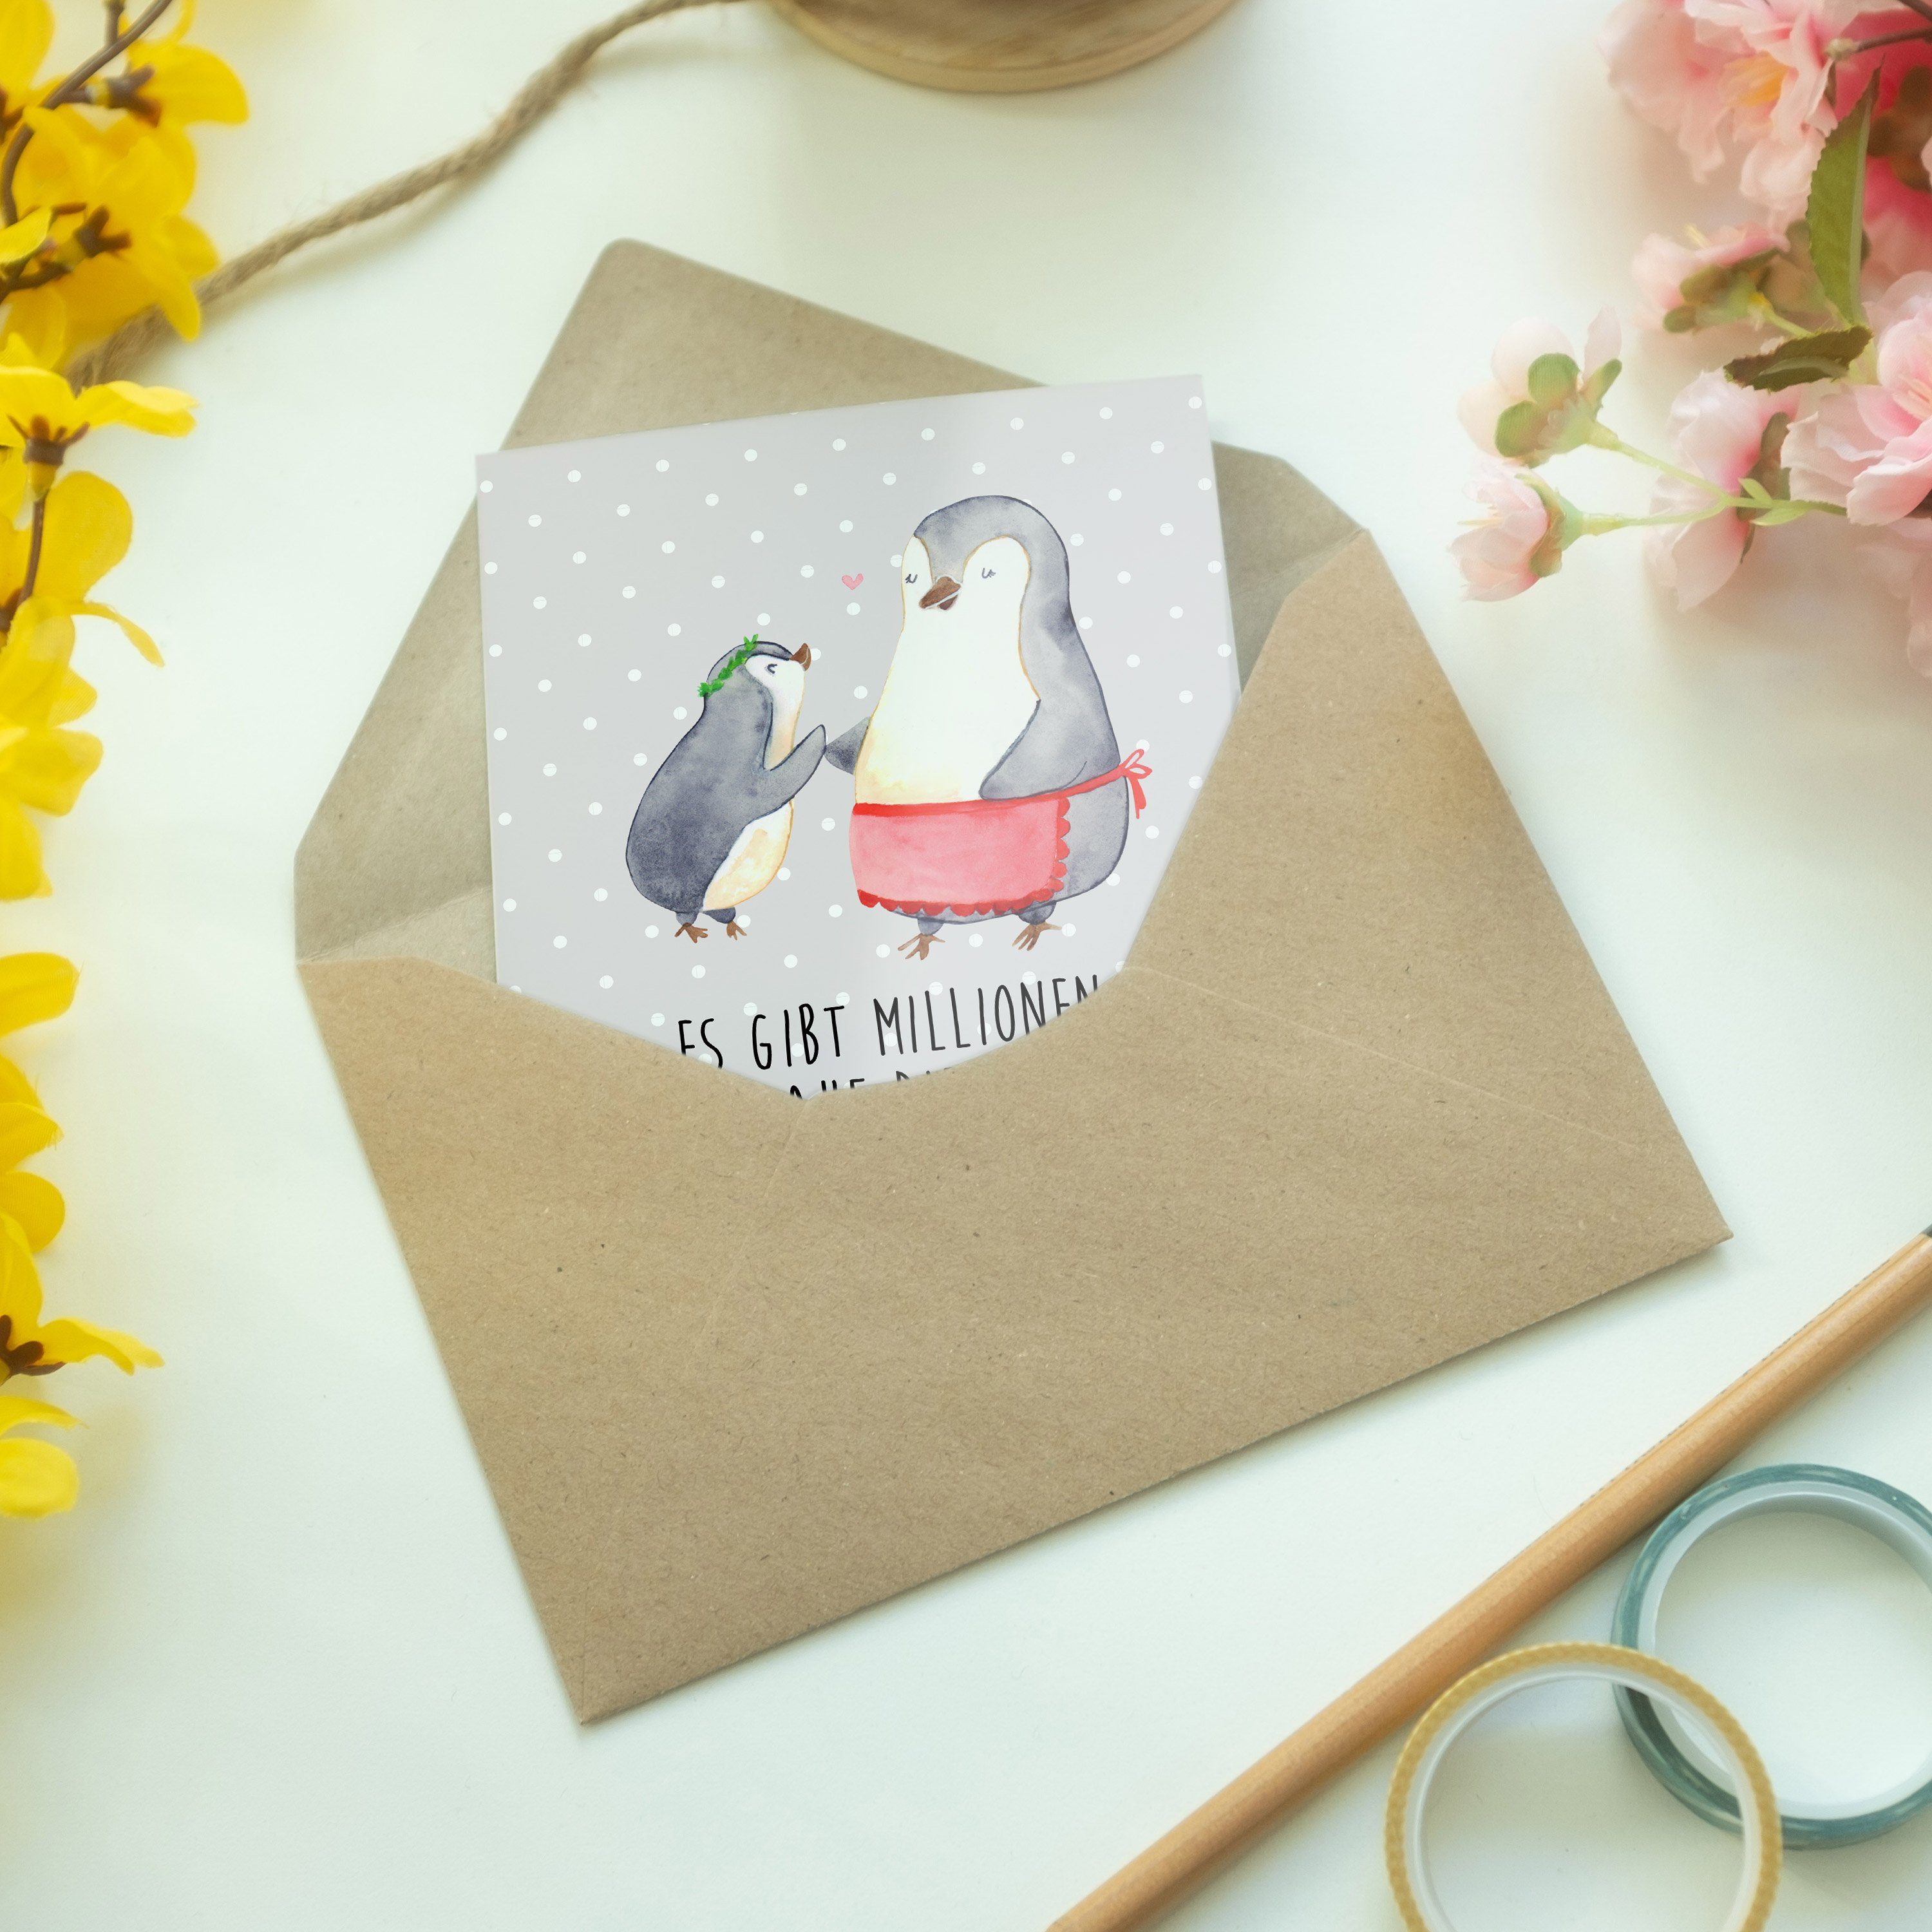 Grau Pastell Kind Pinguin Mrs. Mr. Panda Geschenk, & - - mit Schwest Grußkarte Glückwunschkarte,